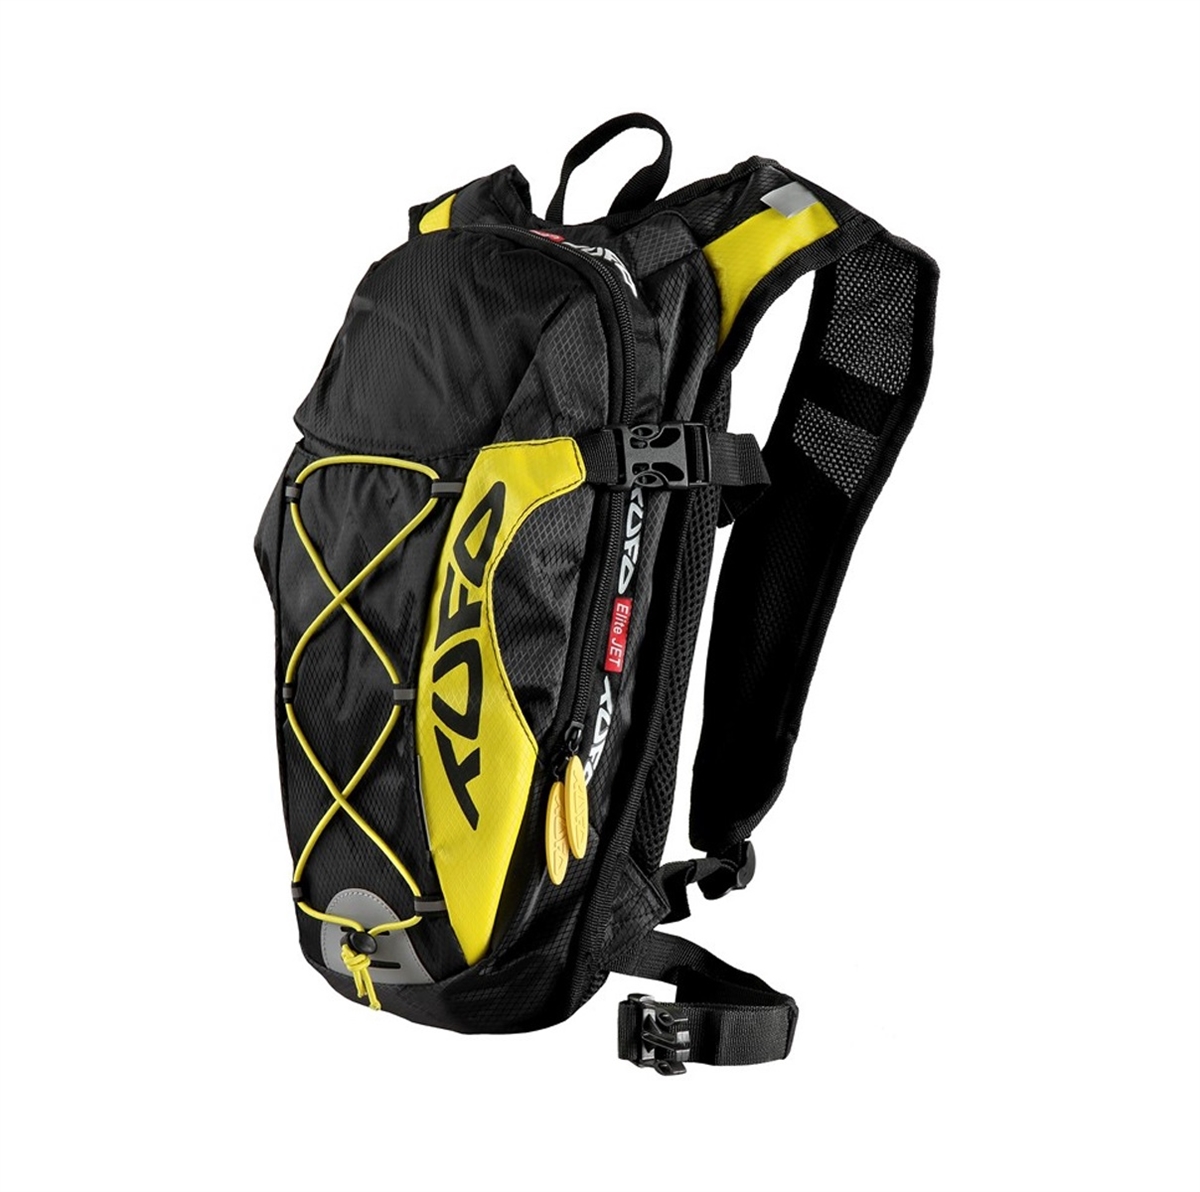 Backpack multifonctionnel cycliste 10l jaune noir